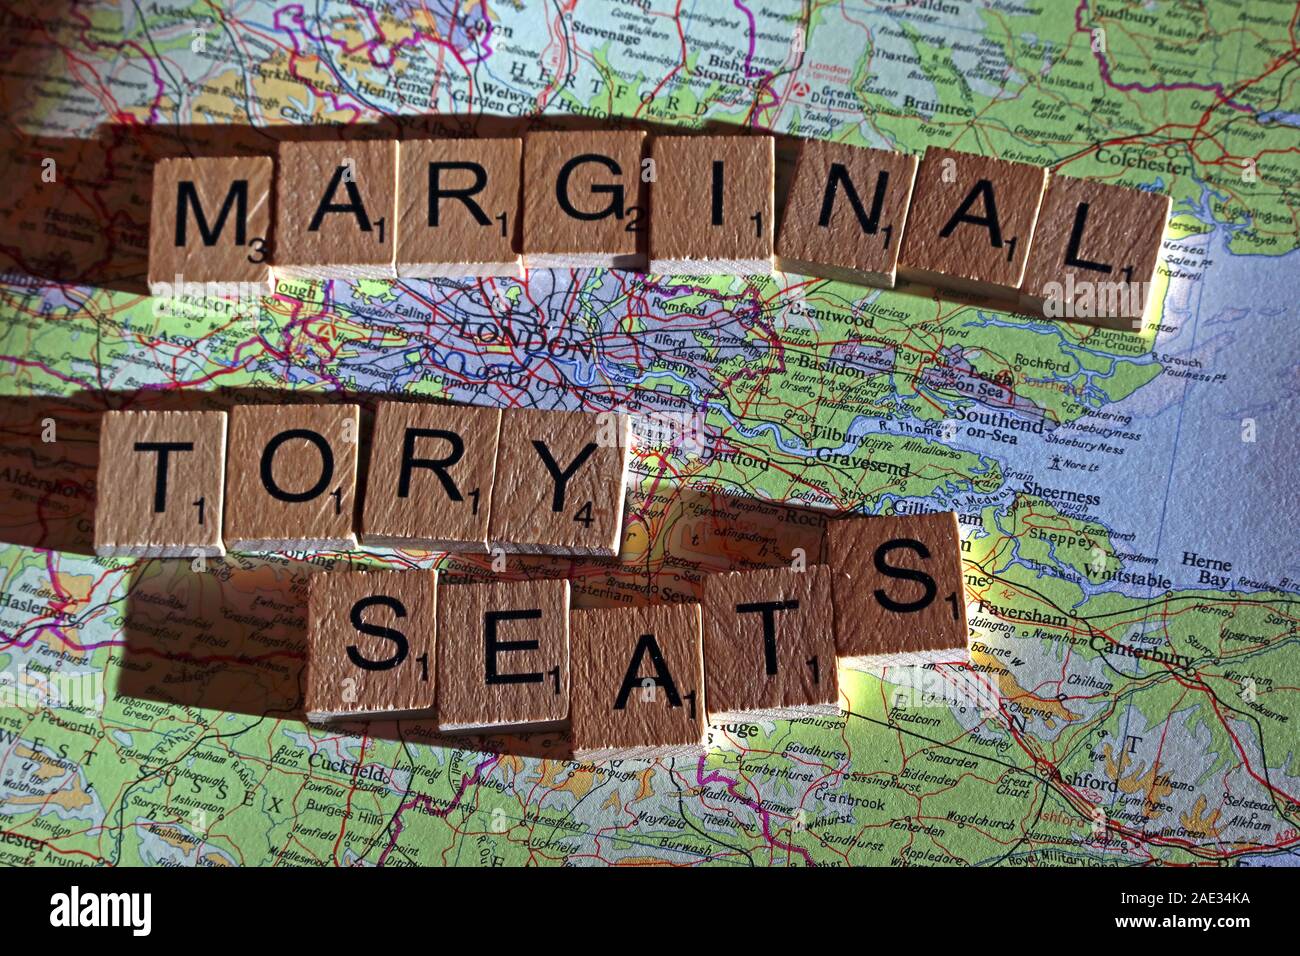 Rn Tory Sitze Dinkel in Scrabble Buchstaben auf einem UK Karte - allgemeine Wahlen, Wahlen, Parteien, Politiker, Parteien, Ansprüche, Zweifel Stockfoto